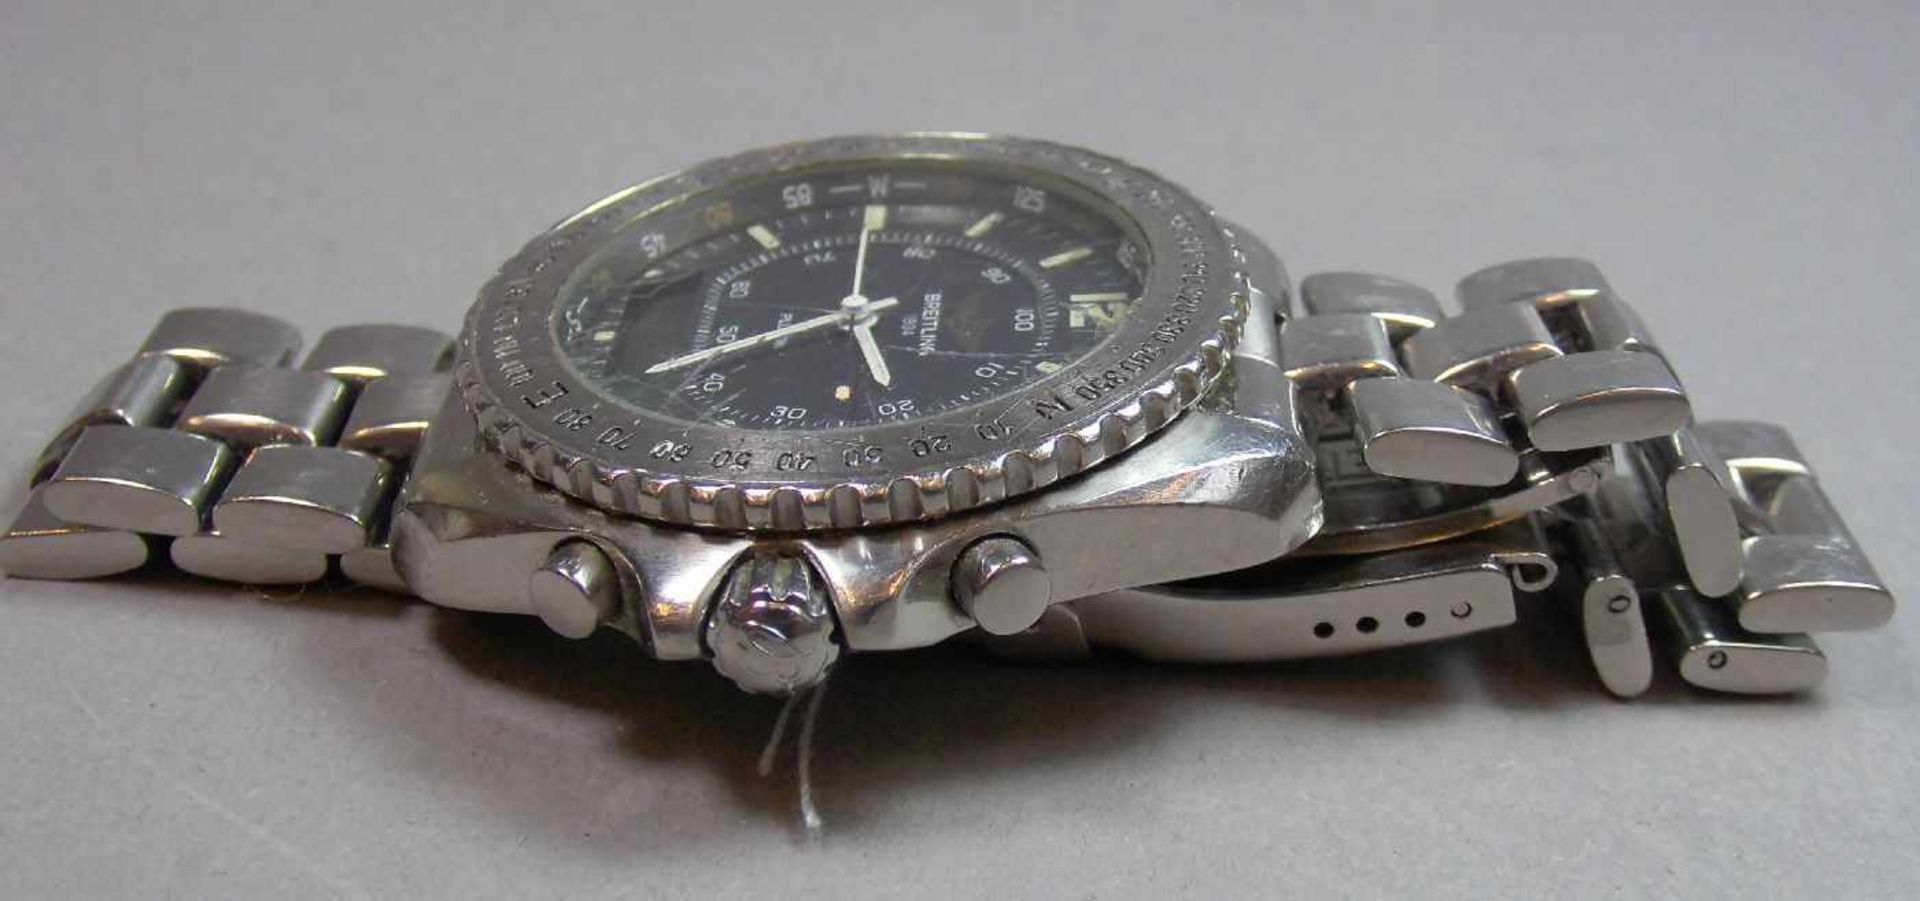 BREITLING "PLUTON" ARMBANDUHR / wristwatch, Quarz-Uhr, Schweiz. Stahlgehäuse mit drehbarer - Bild 7 aus 9